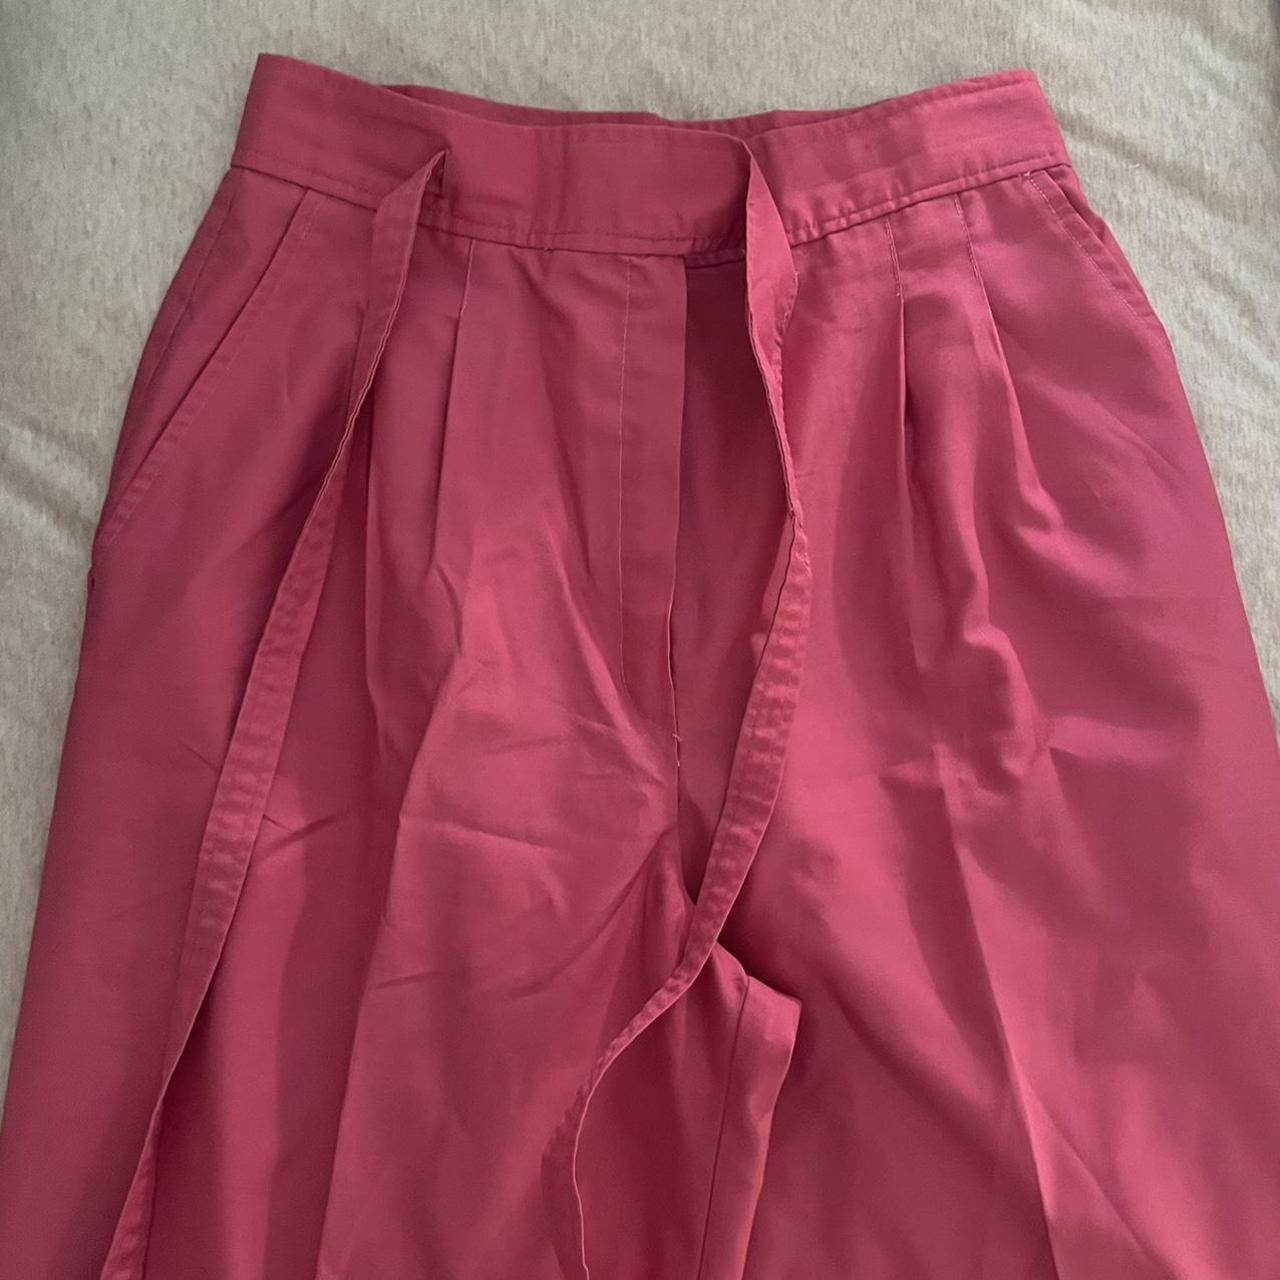 women’s vintage tapered pink wrap slacks size S... - Depop